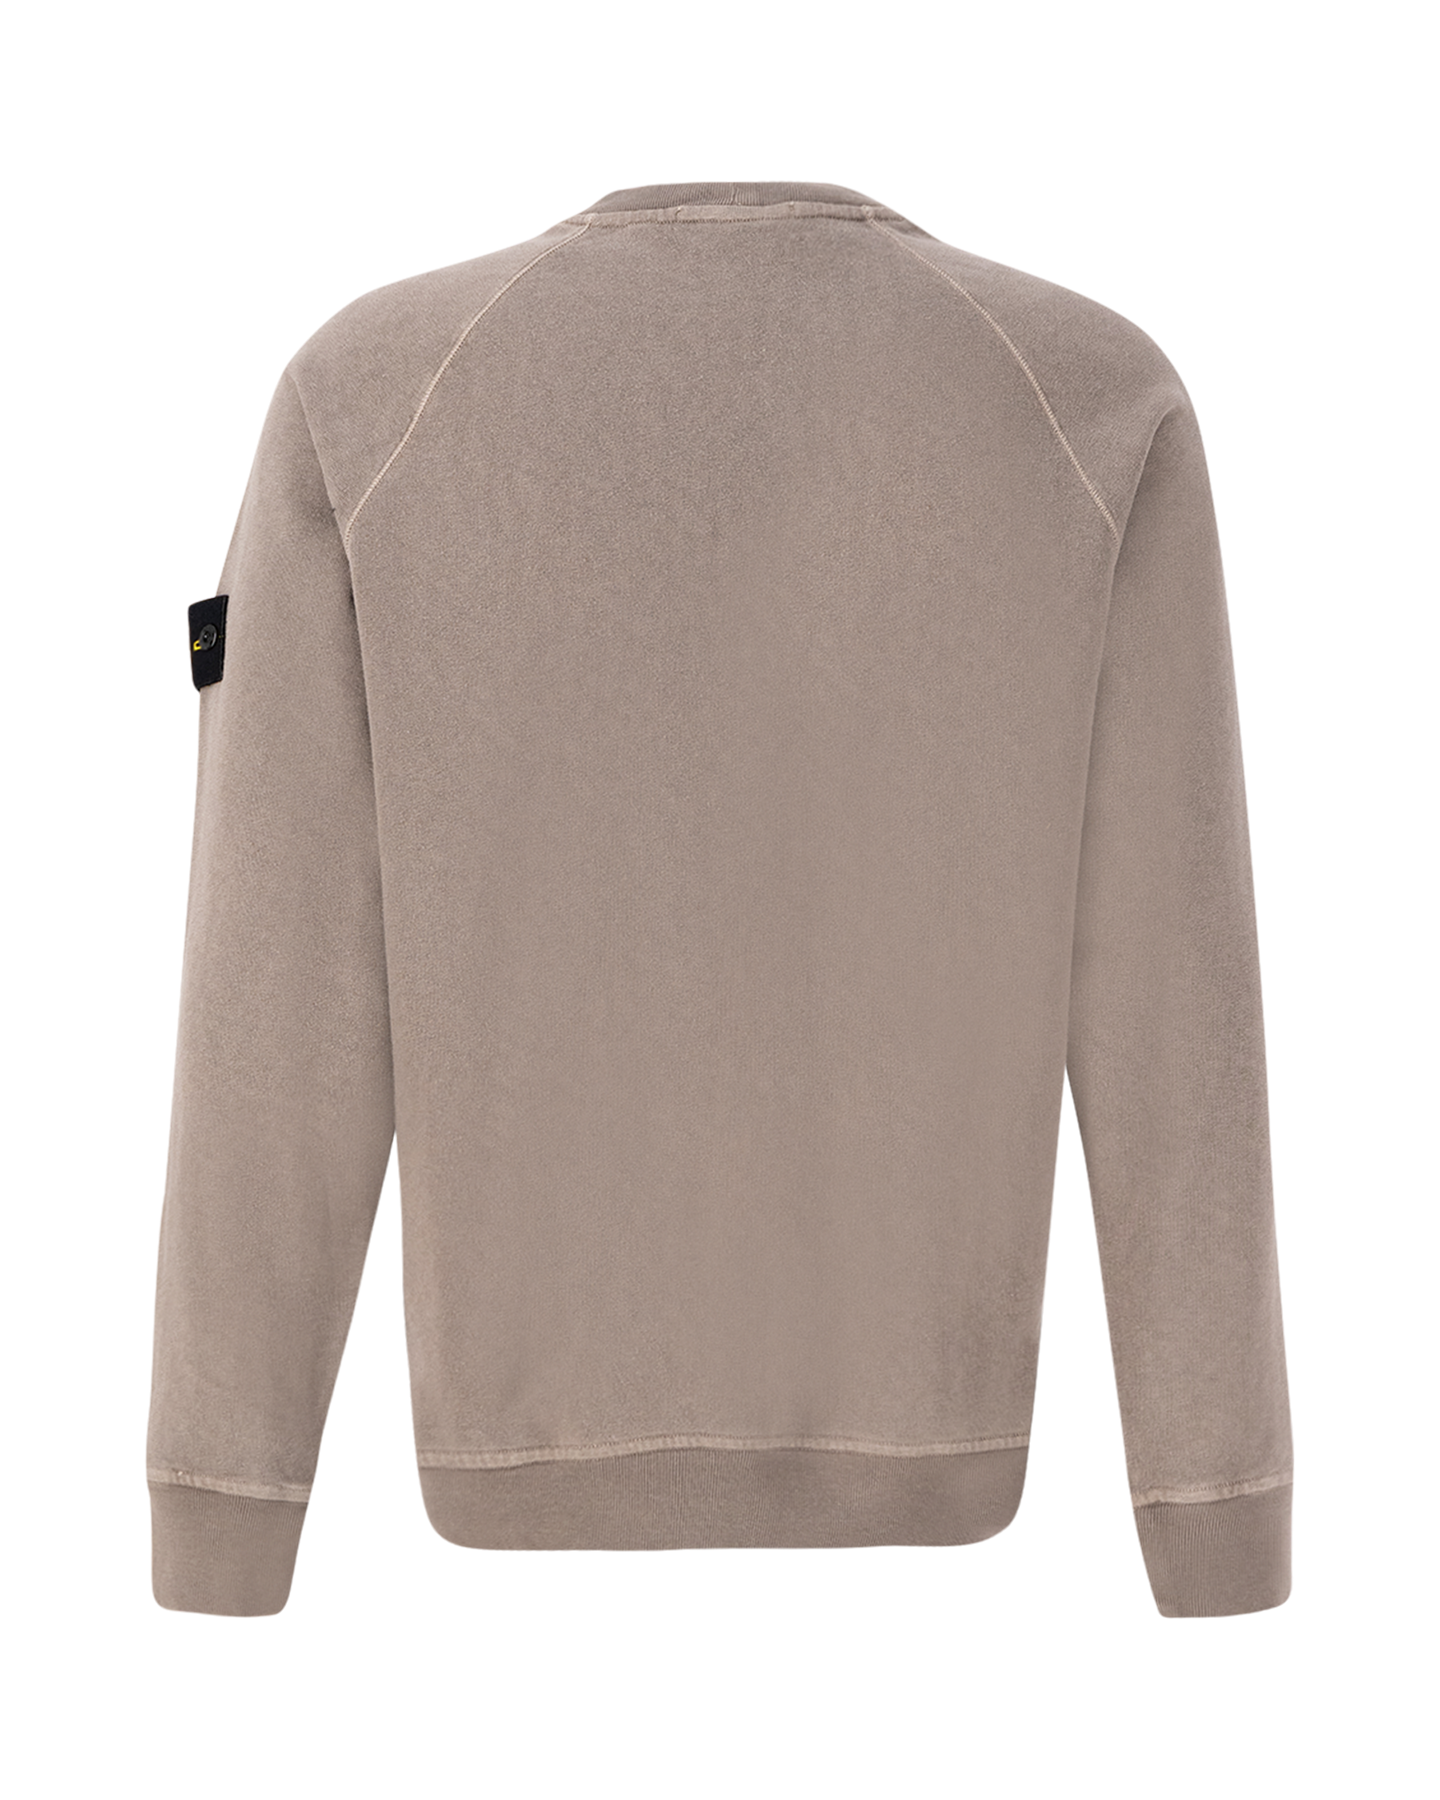 Stone Island 66060 Malfile Fleece Garment Dyed 'Old' Effect Crewneck Sweatshirt GRIJS 2